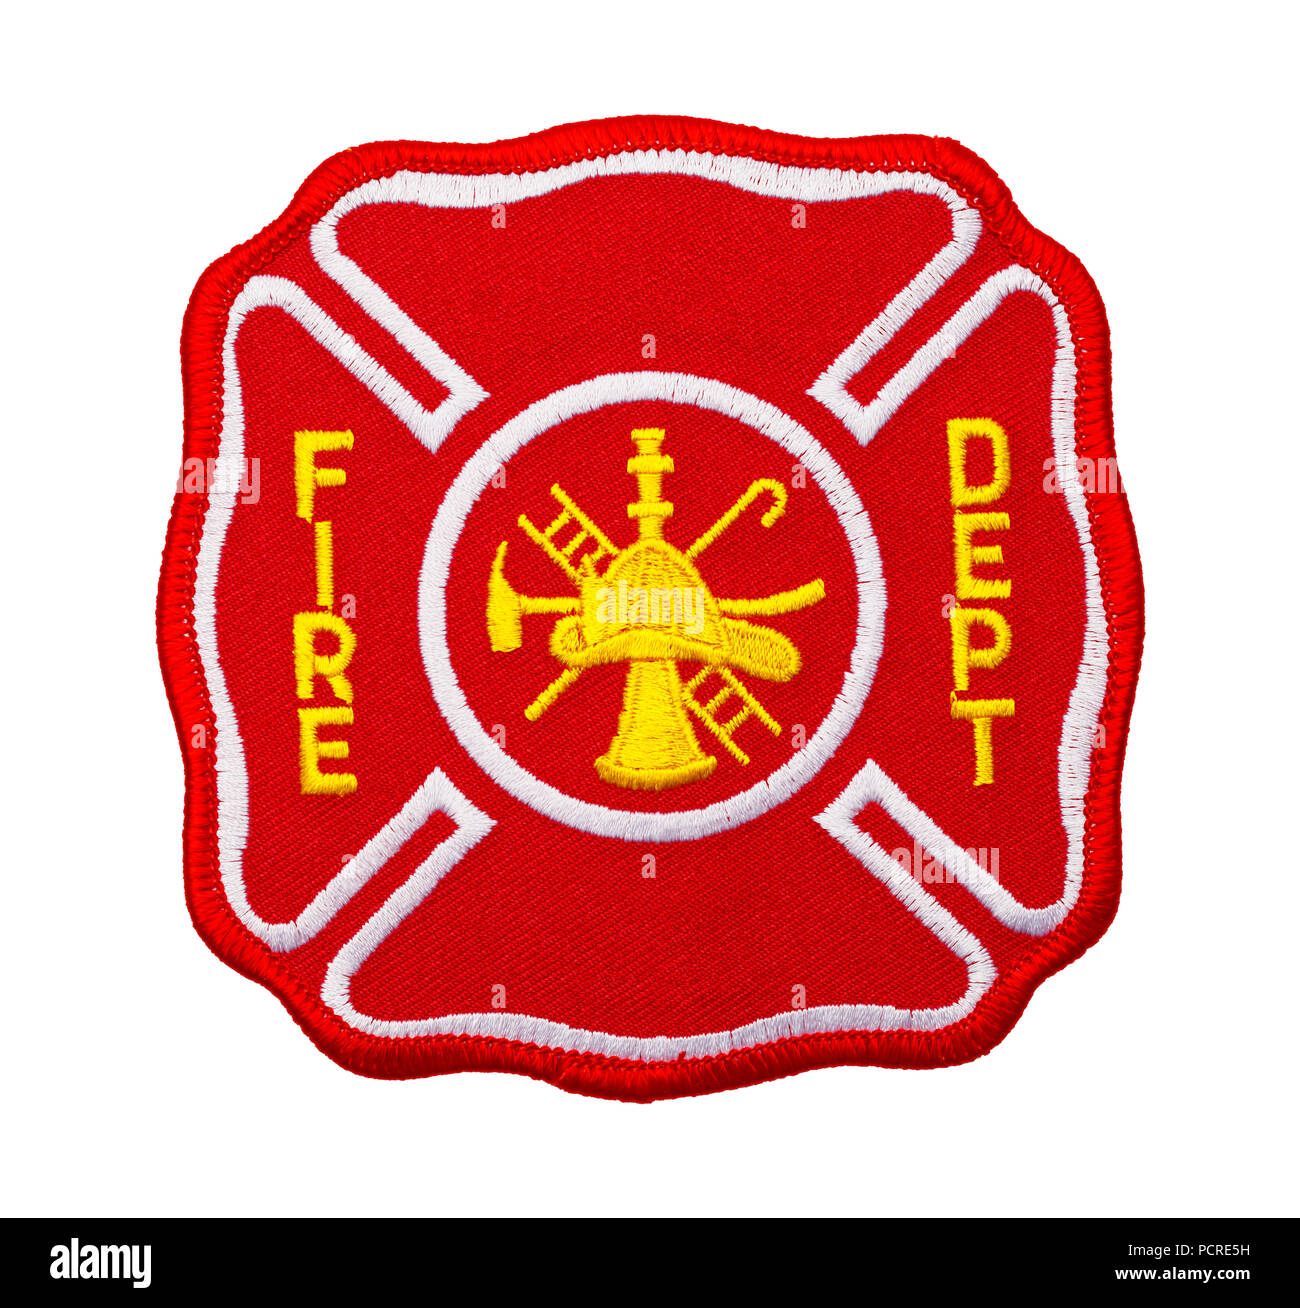 Red Fire Department Patch isolati su sfondo bianco. Foto Stock